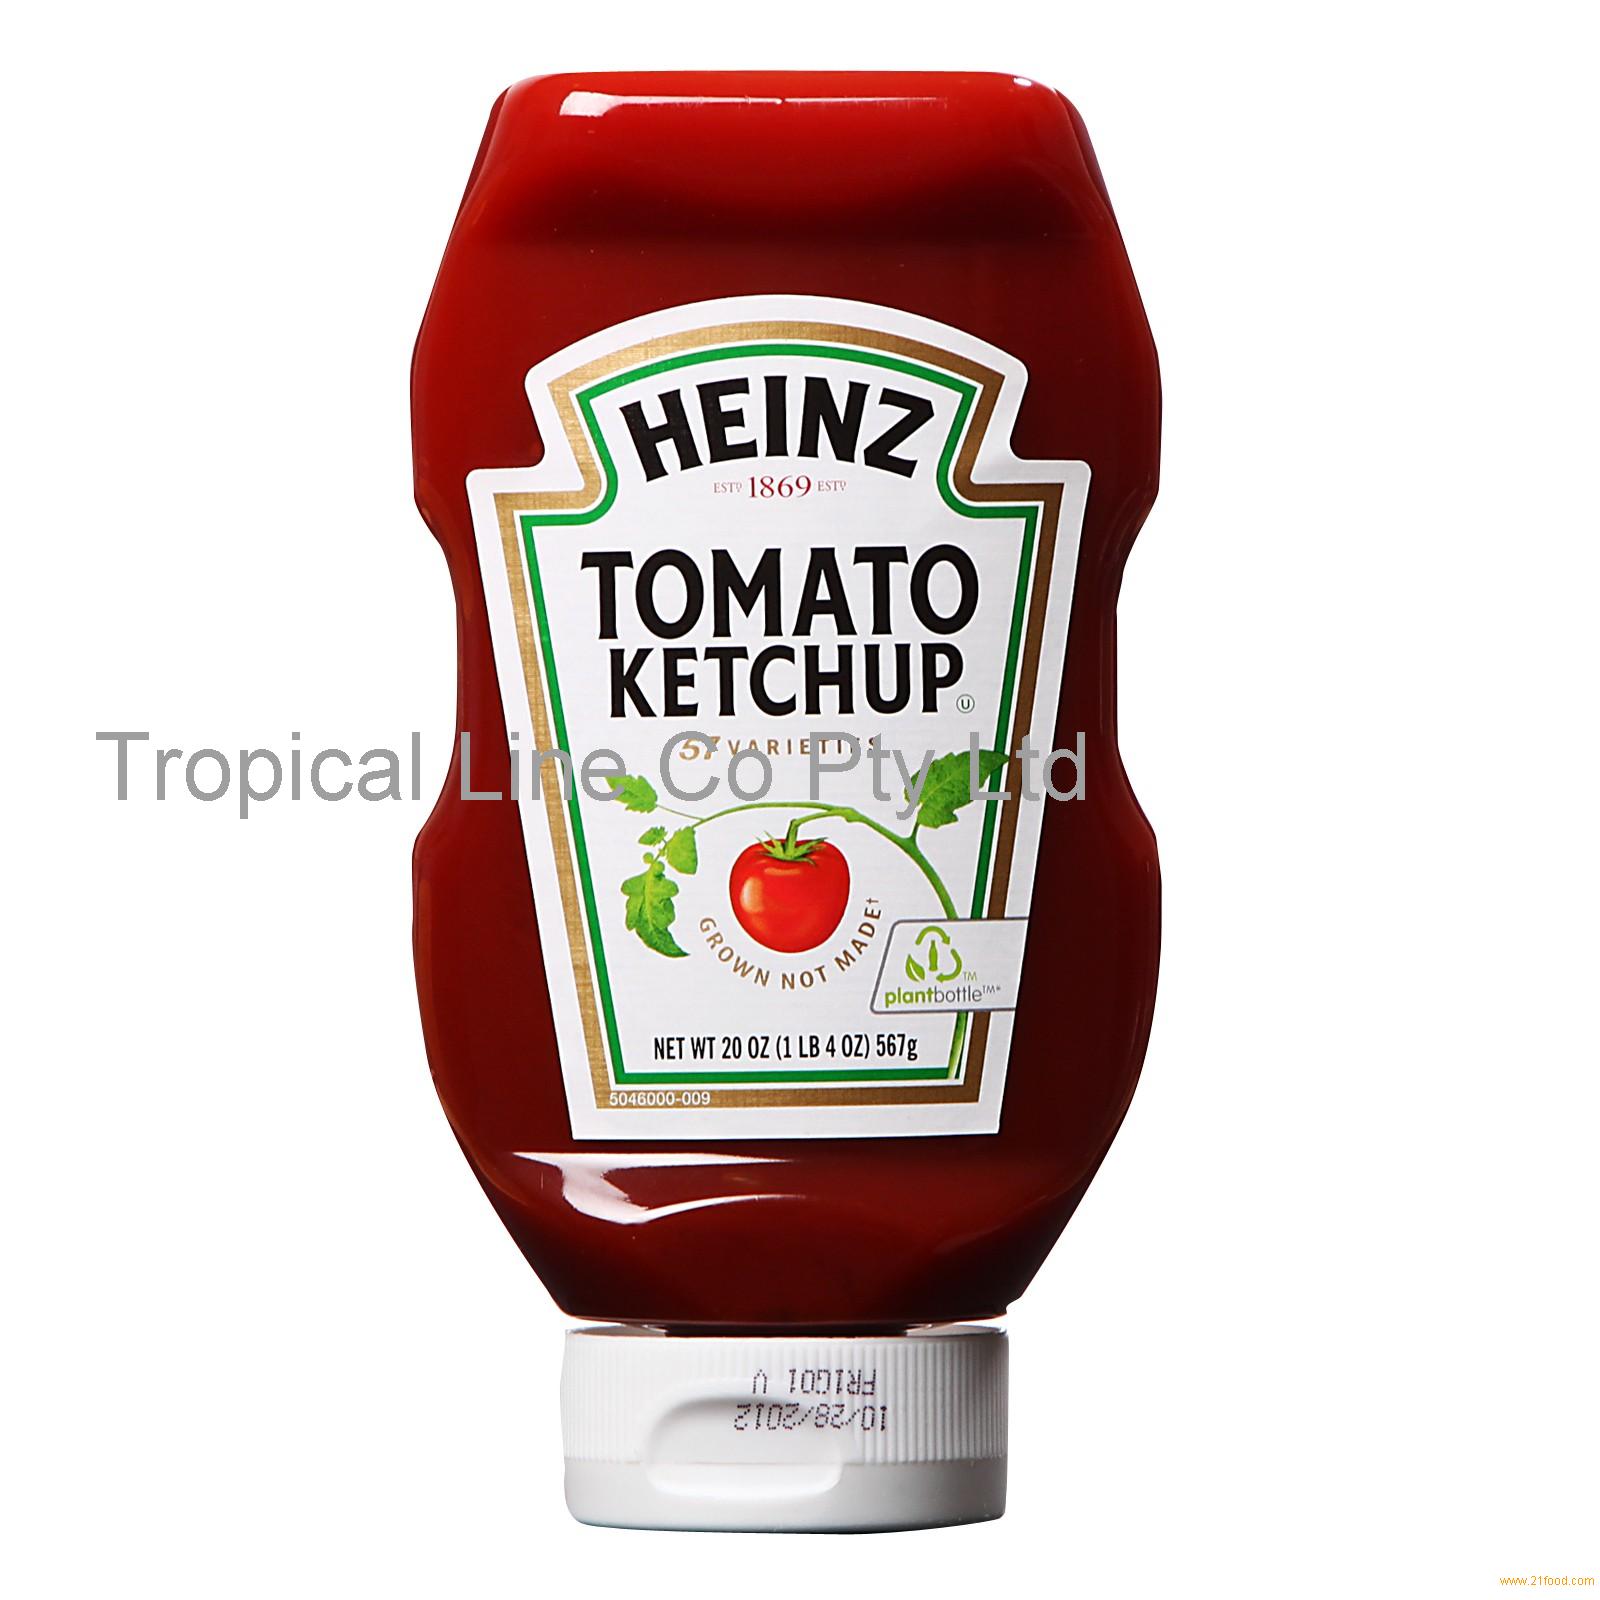 Tomato ketchup. Heinz Tomato Ketchup. Кетчуп Heinz томатный. Соус кетчуп. Томатный соус Хайнц.